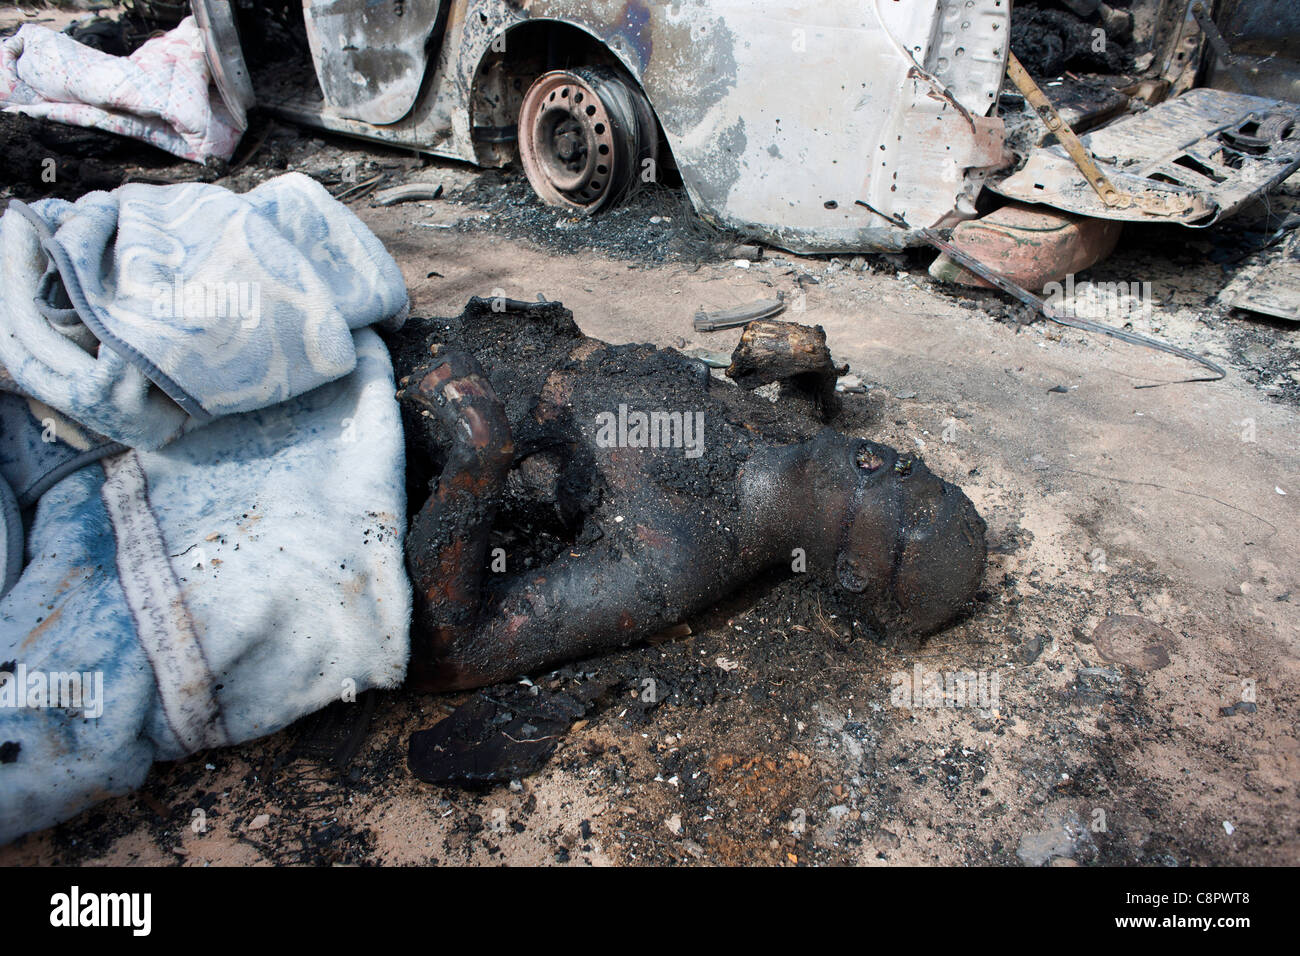 Les restes calcinés de l'un d'Gadaffis loyalst troupes après être incinérés dans un bombardement de l'OTAN sur le convoi de Kadhafi Banque D'Images